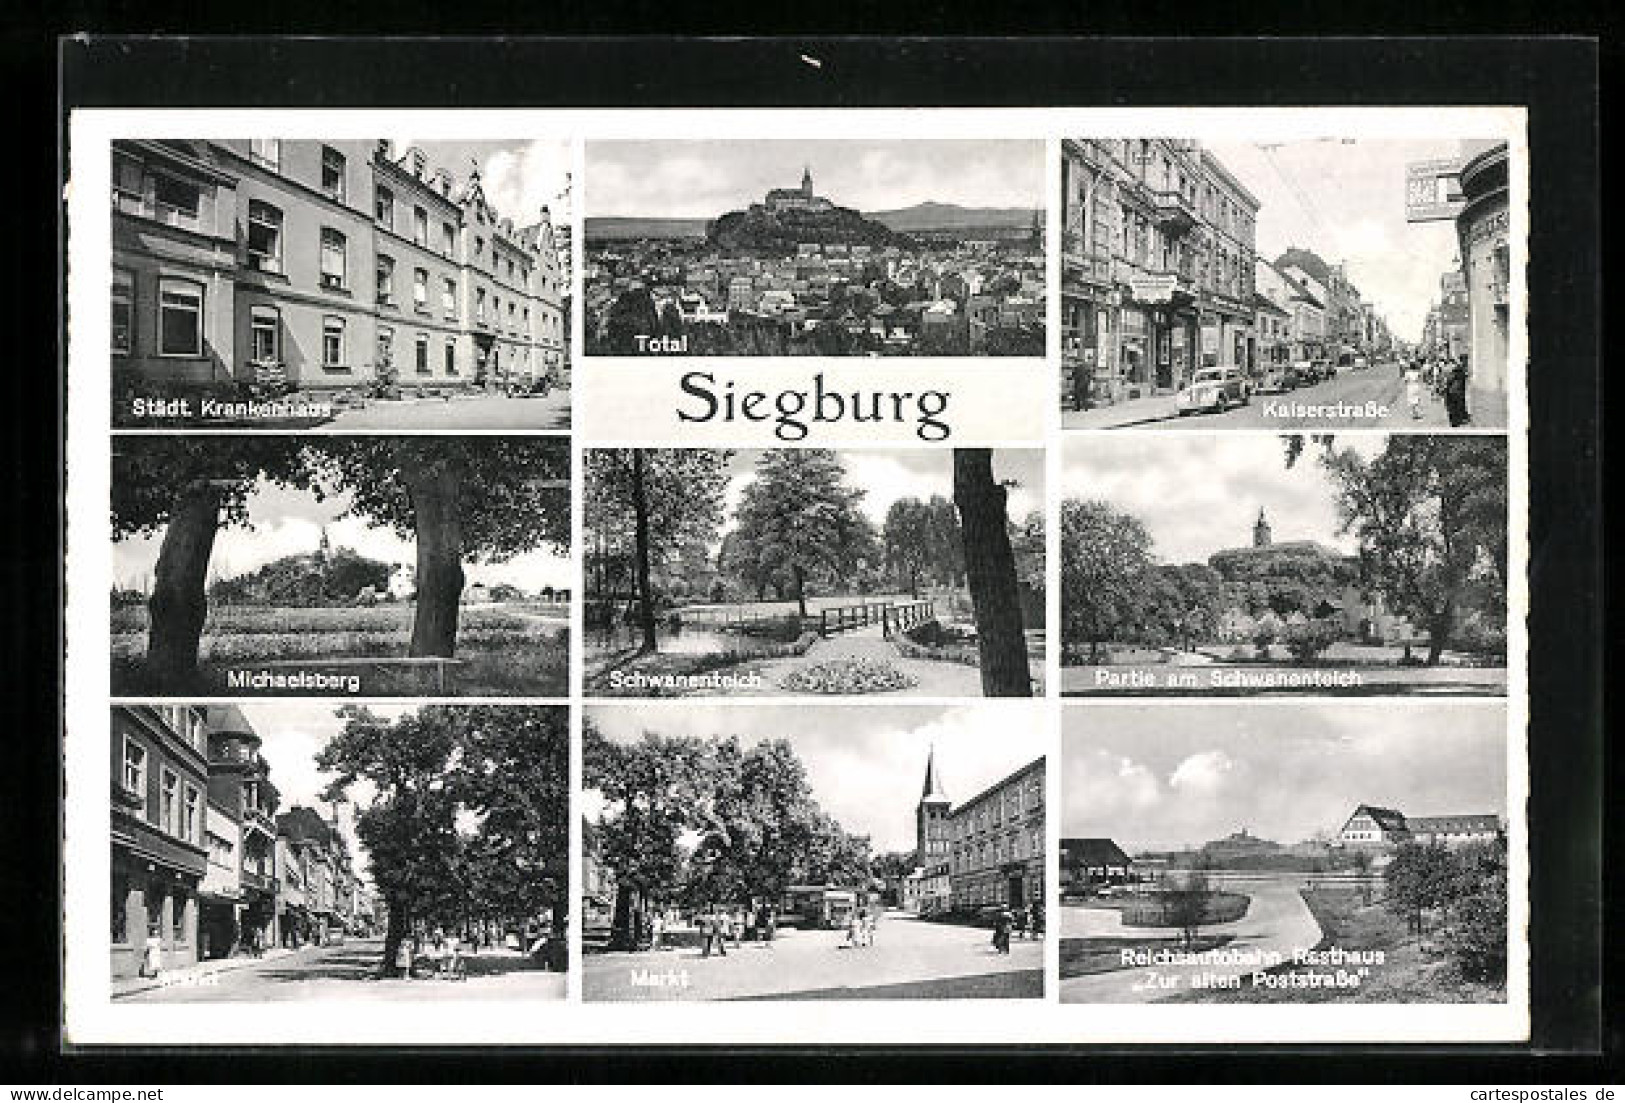 AK Siegburg, Städt. Krankenhaus, Kaiserstrasse, Markt, Rasthaus Zur Alten Poststrasse  - Siegburg